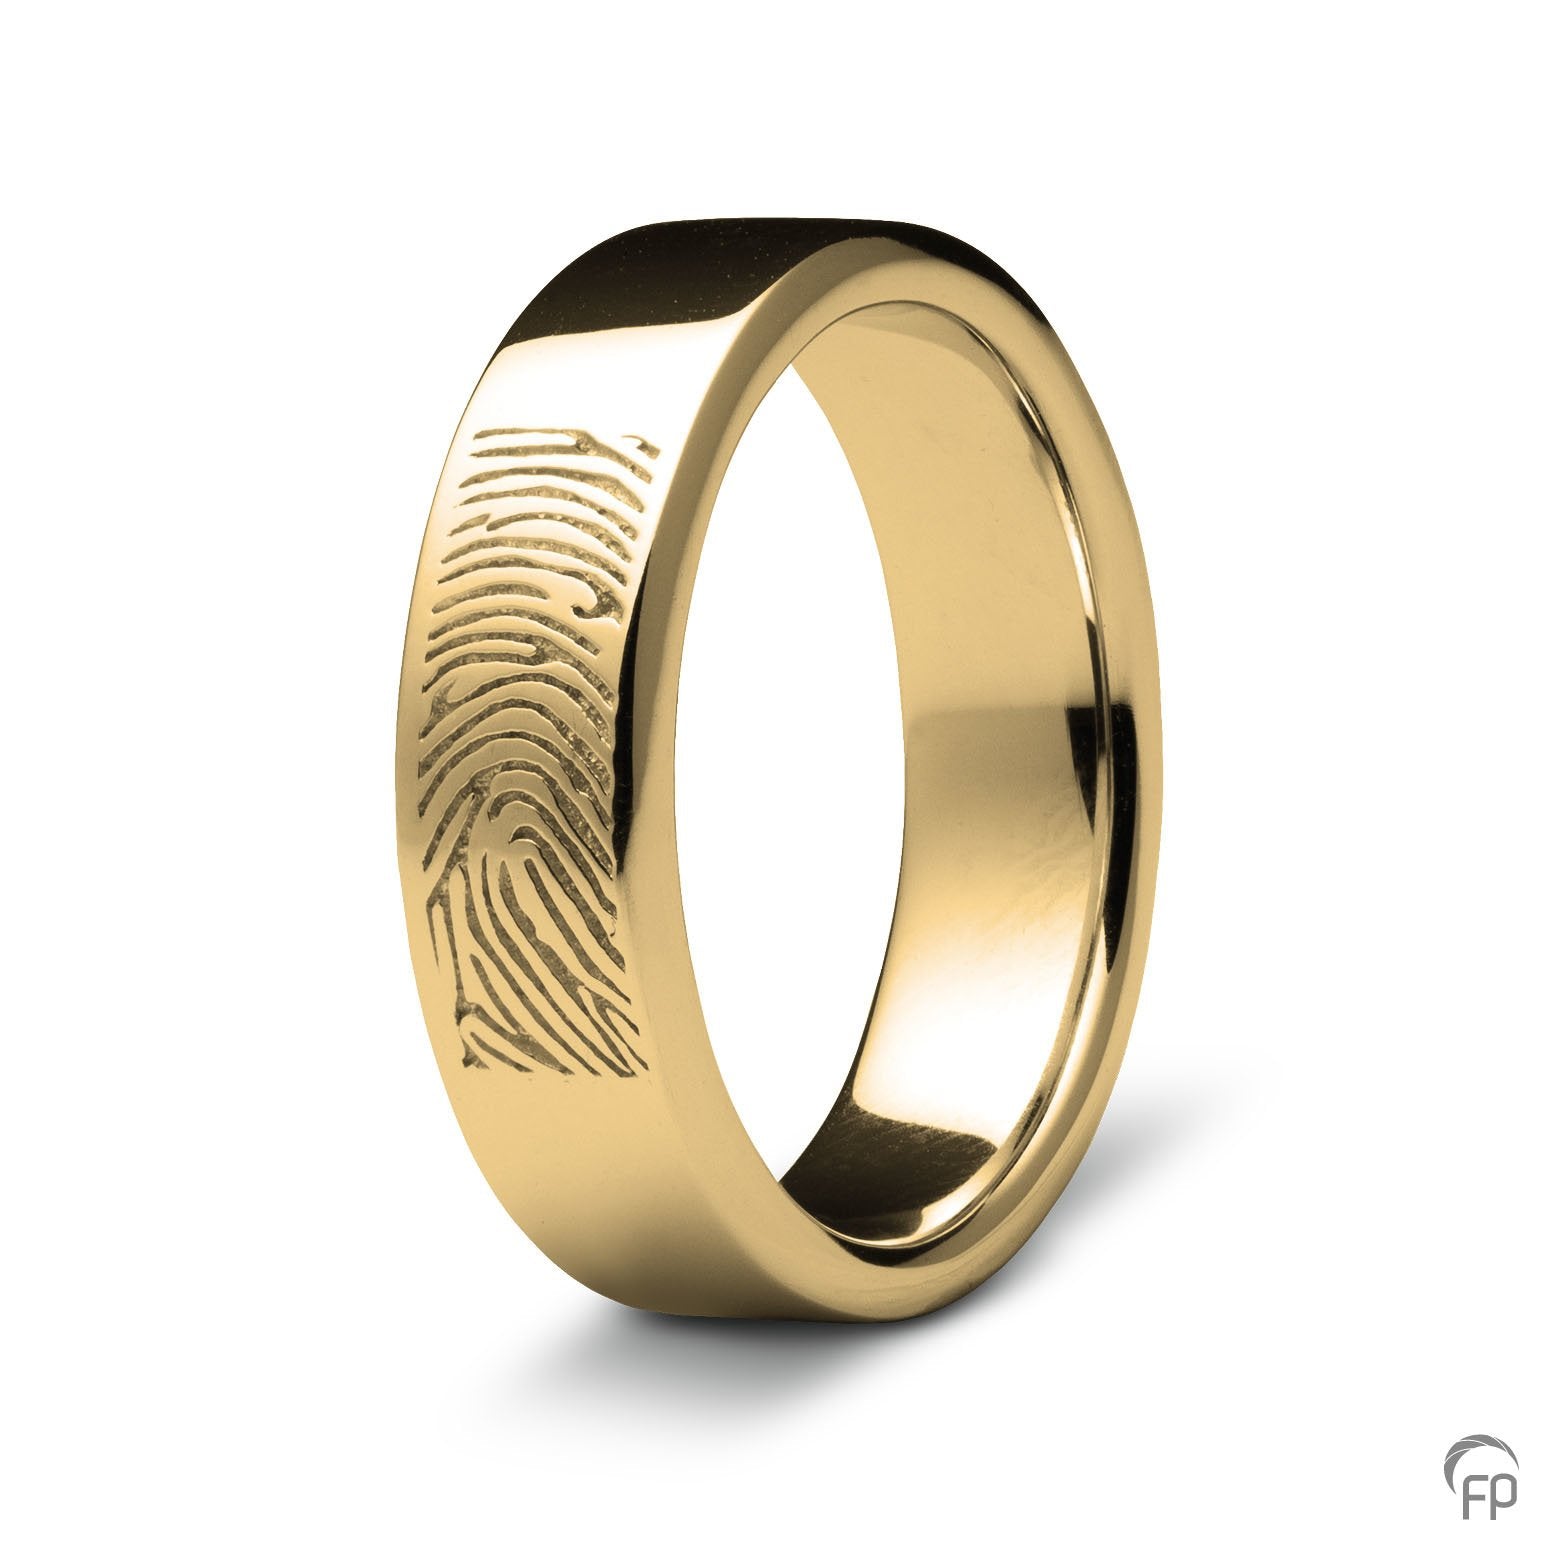 Deze ring van 8 mm breedte met vingerafdruk, heeft een stijlvol en strak design. Het is een tijdloos gedenksieraad met een afwerking naar keuze in glans of matte look. 